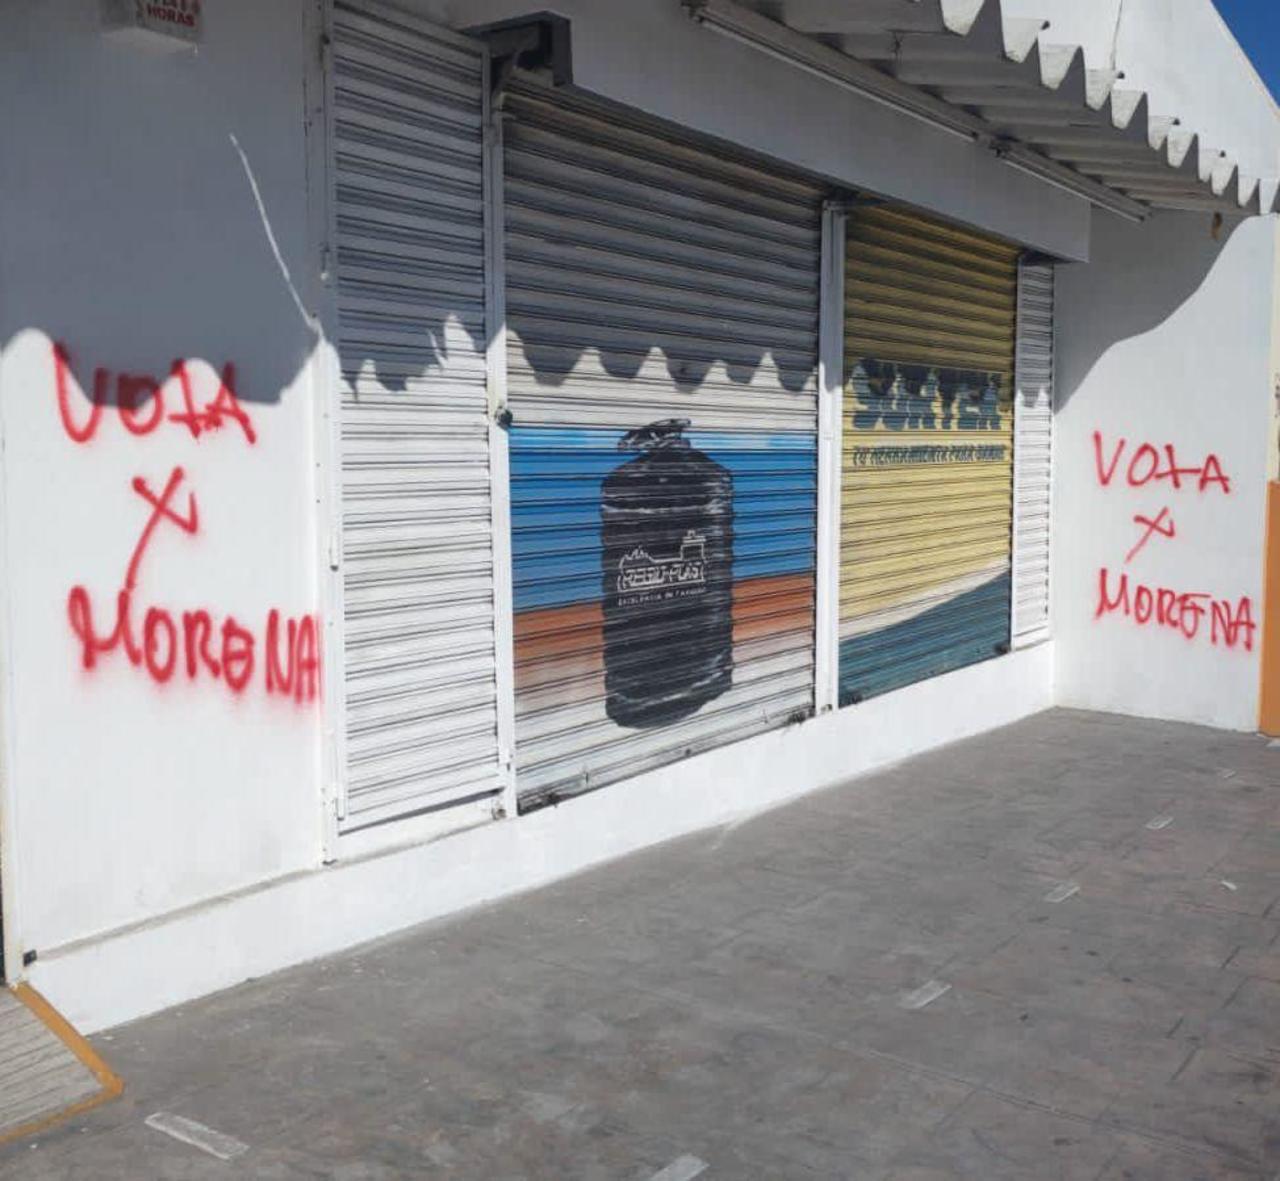 Escriben 'Vota x Morena' en inmuebles del centro histórico.